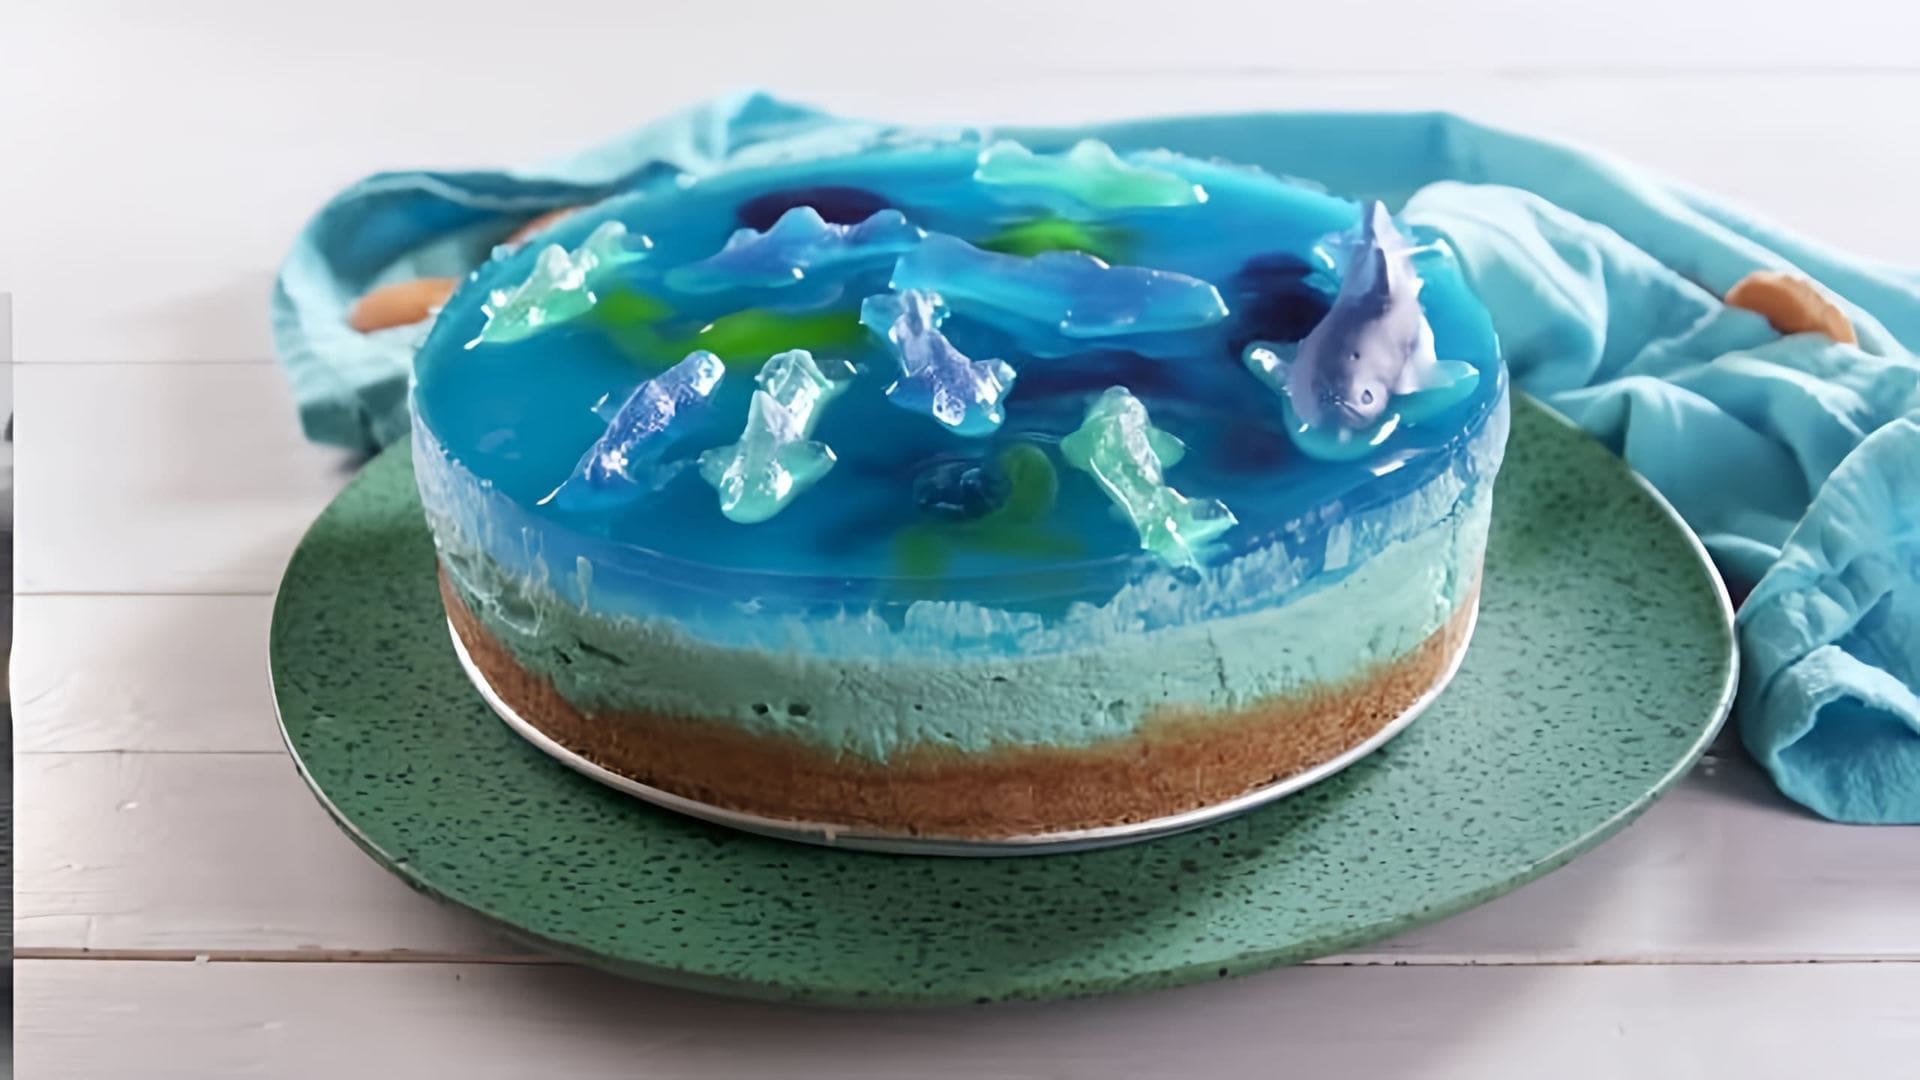 "Чизкейк торт остров с желе" - это видео-ролик, который демонстрирует процесс приготовления вкусного и оригинального десерта